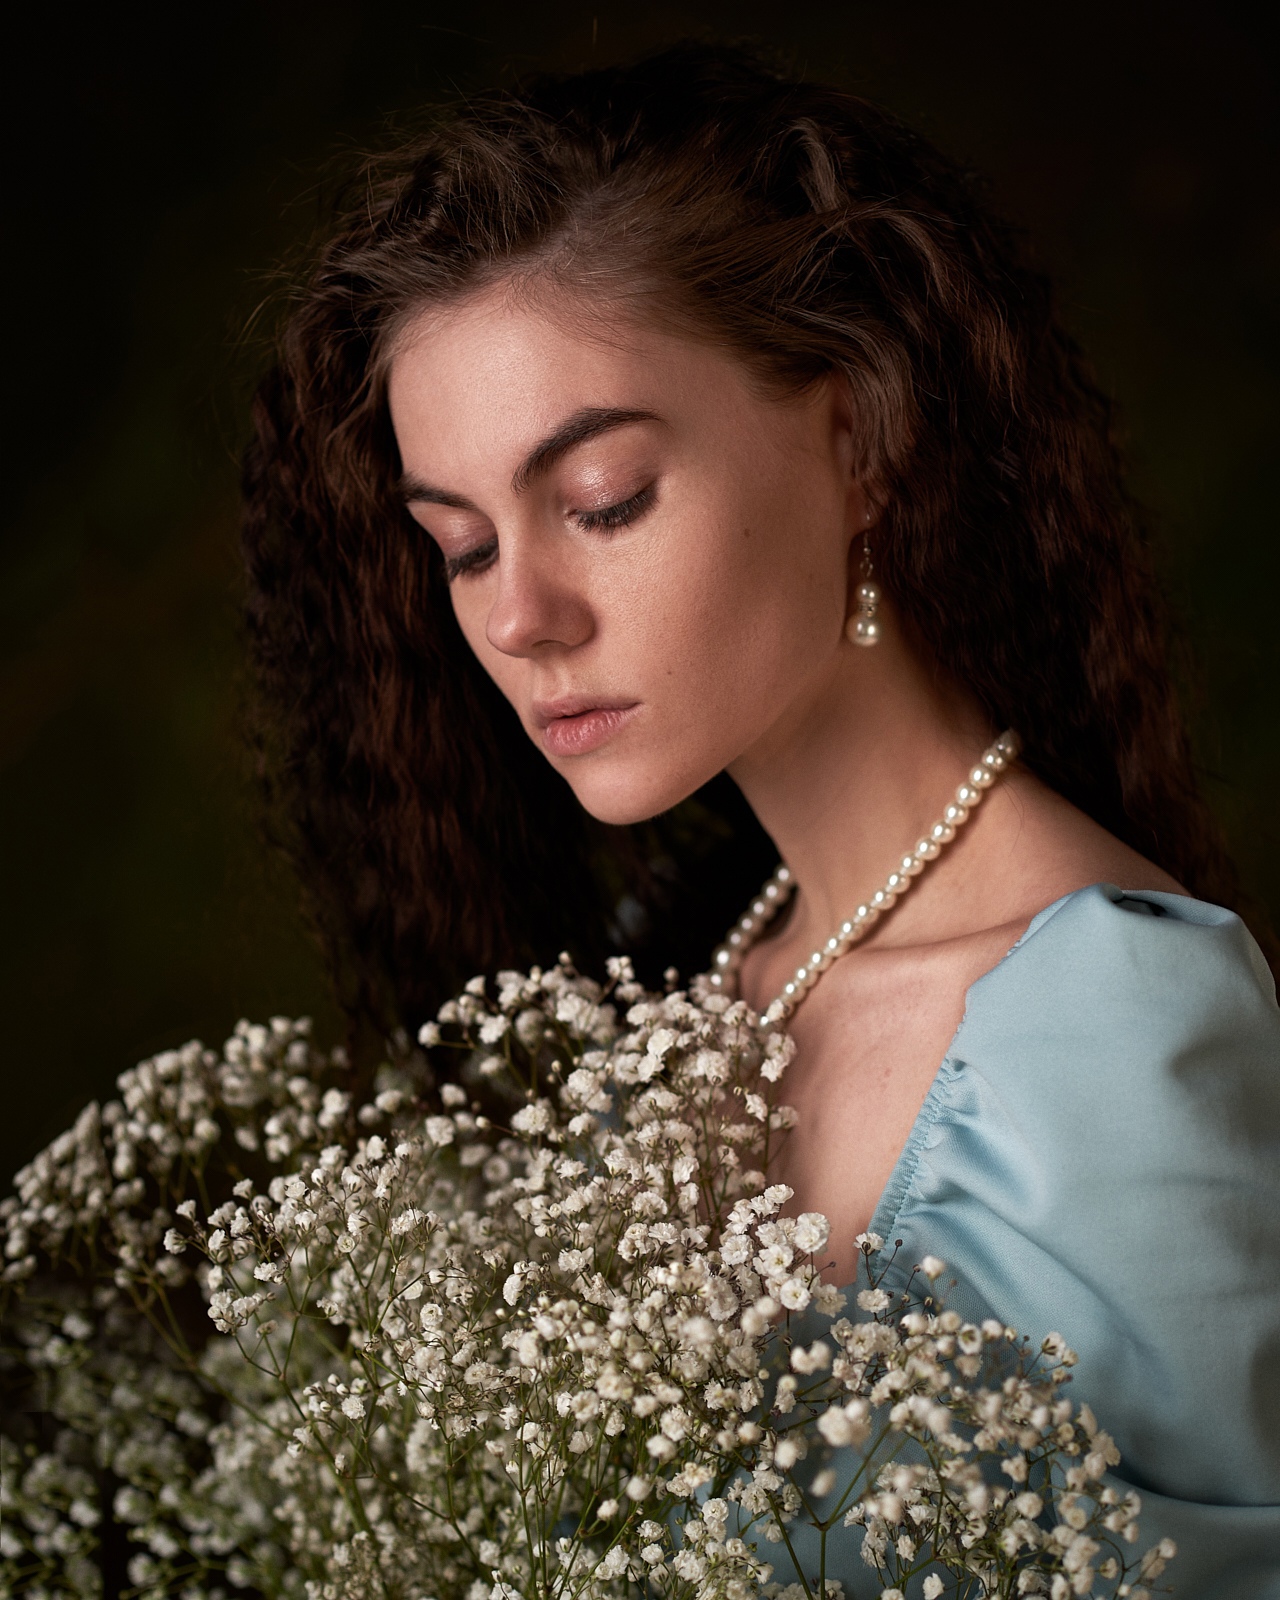 Max Pyzhik Women Brunette Beads Flowers Portrait Simple Background 1280x1600